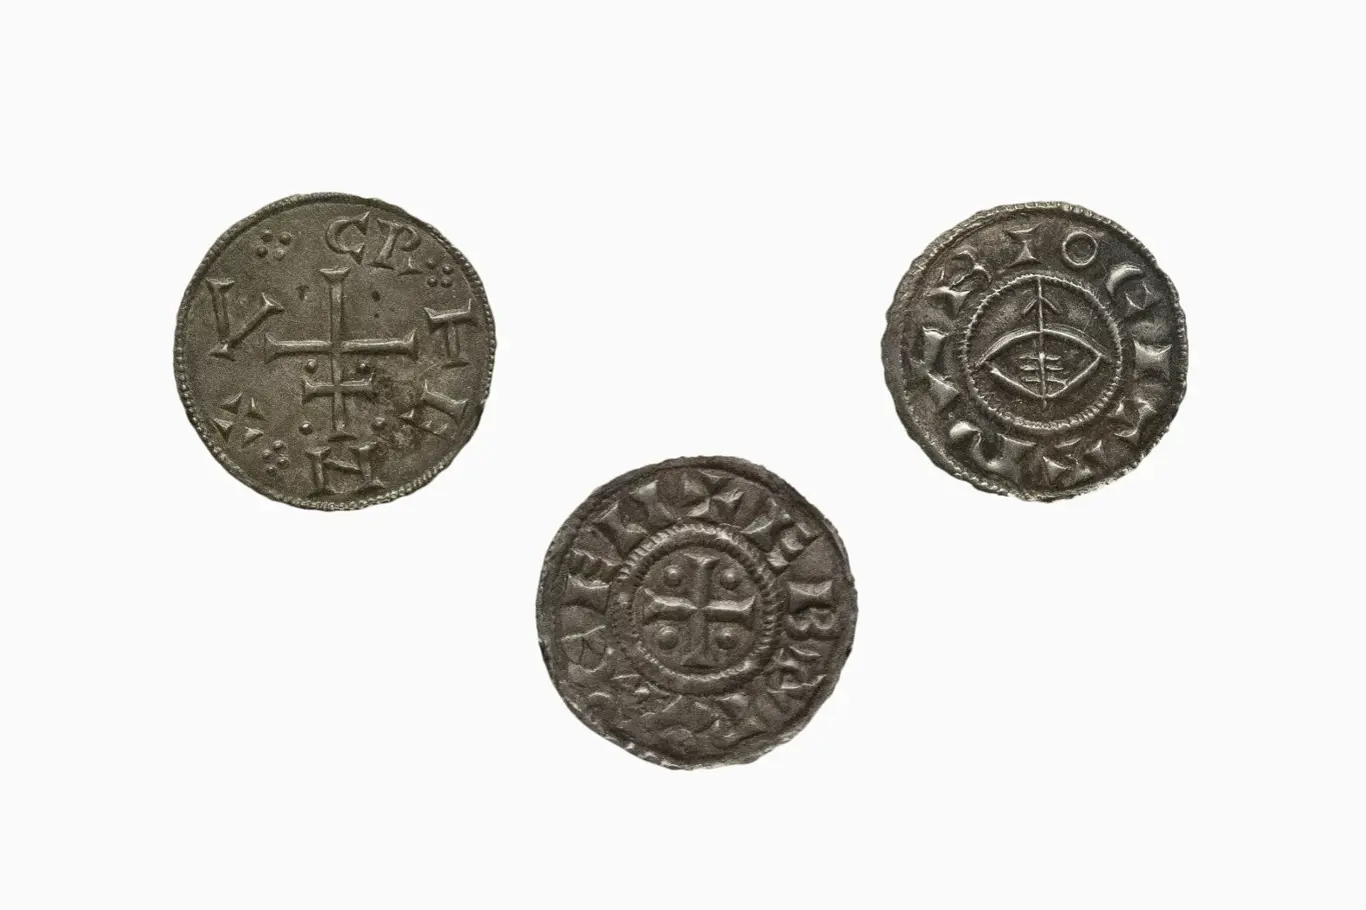 Mince doby vikinské